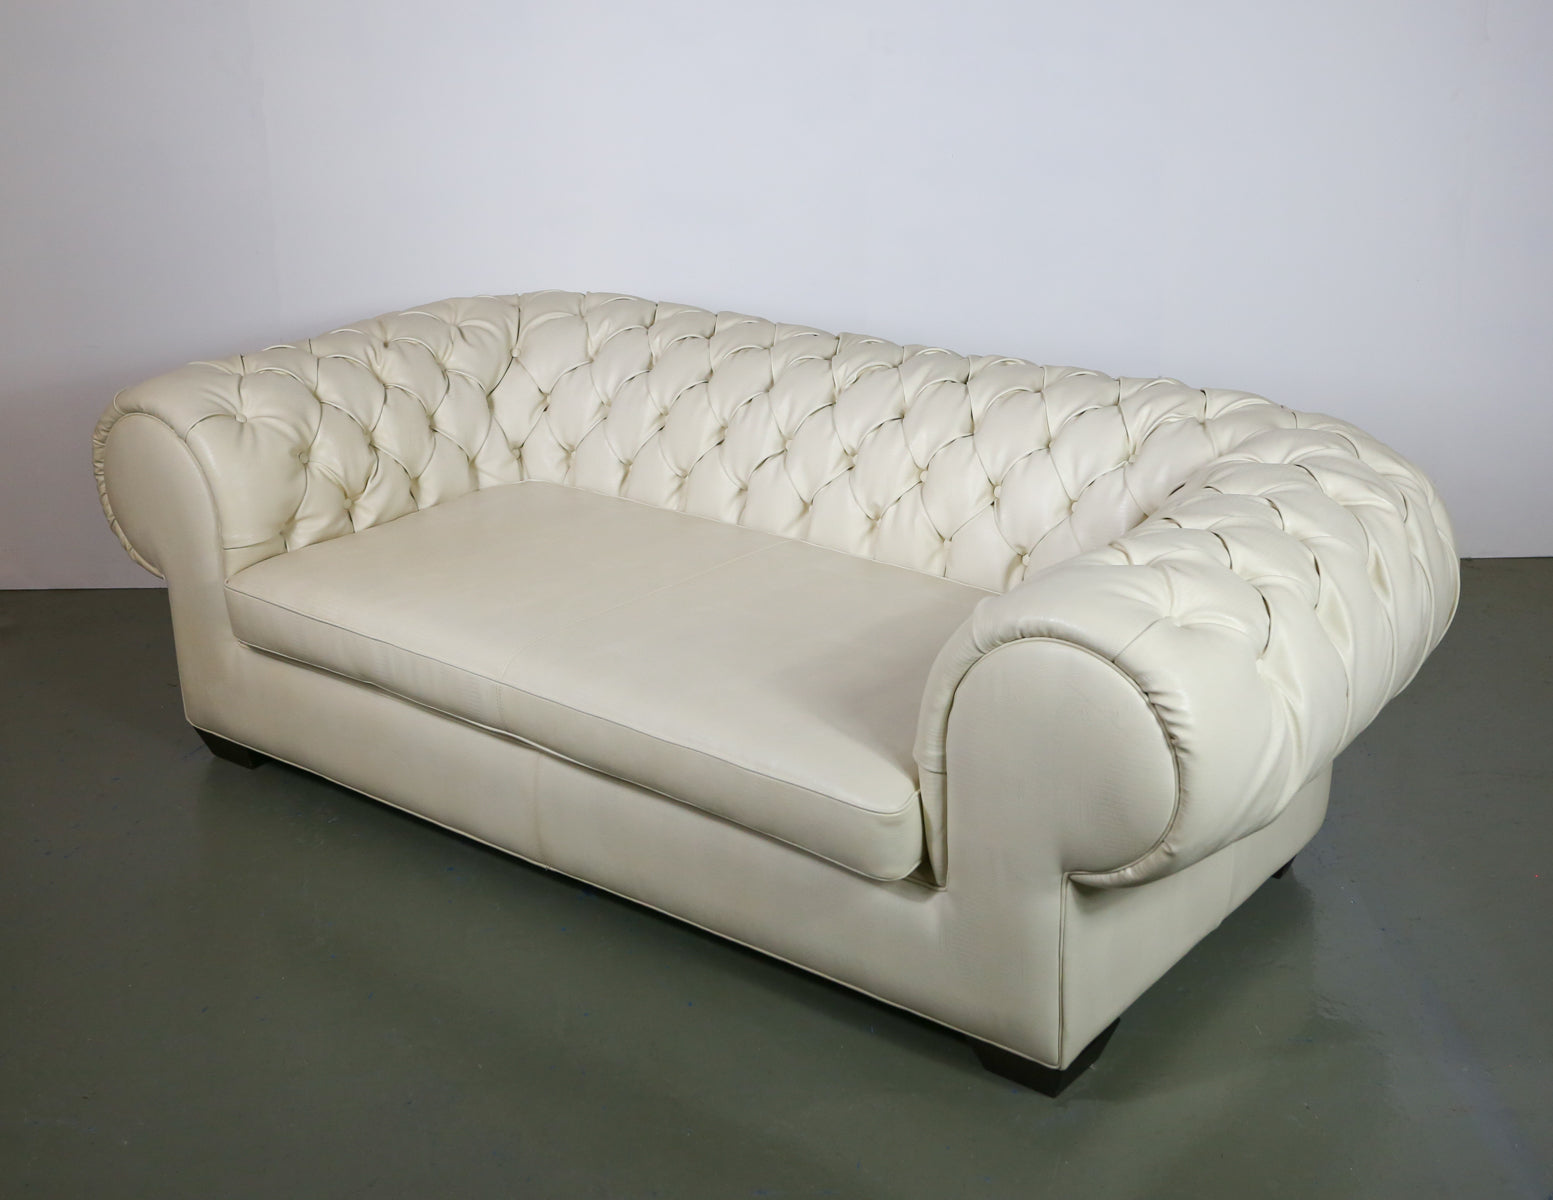 Full Leather Contempo Fatto a Mano Chesterfield Sofa (1 of 2 units)